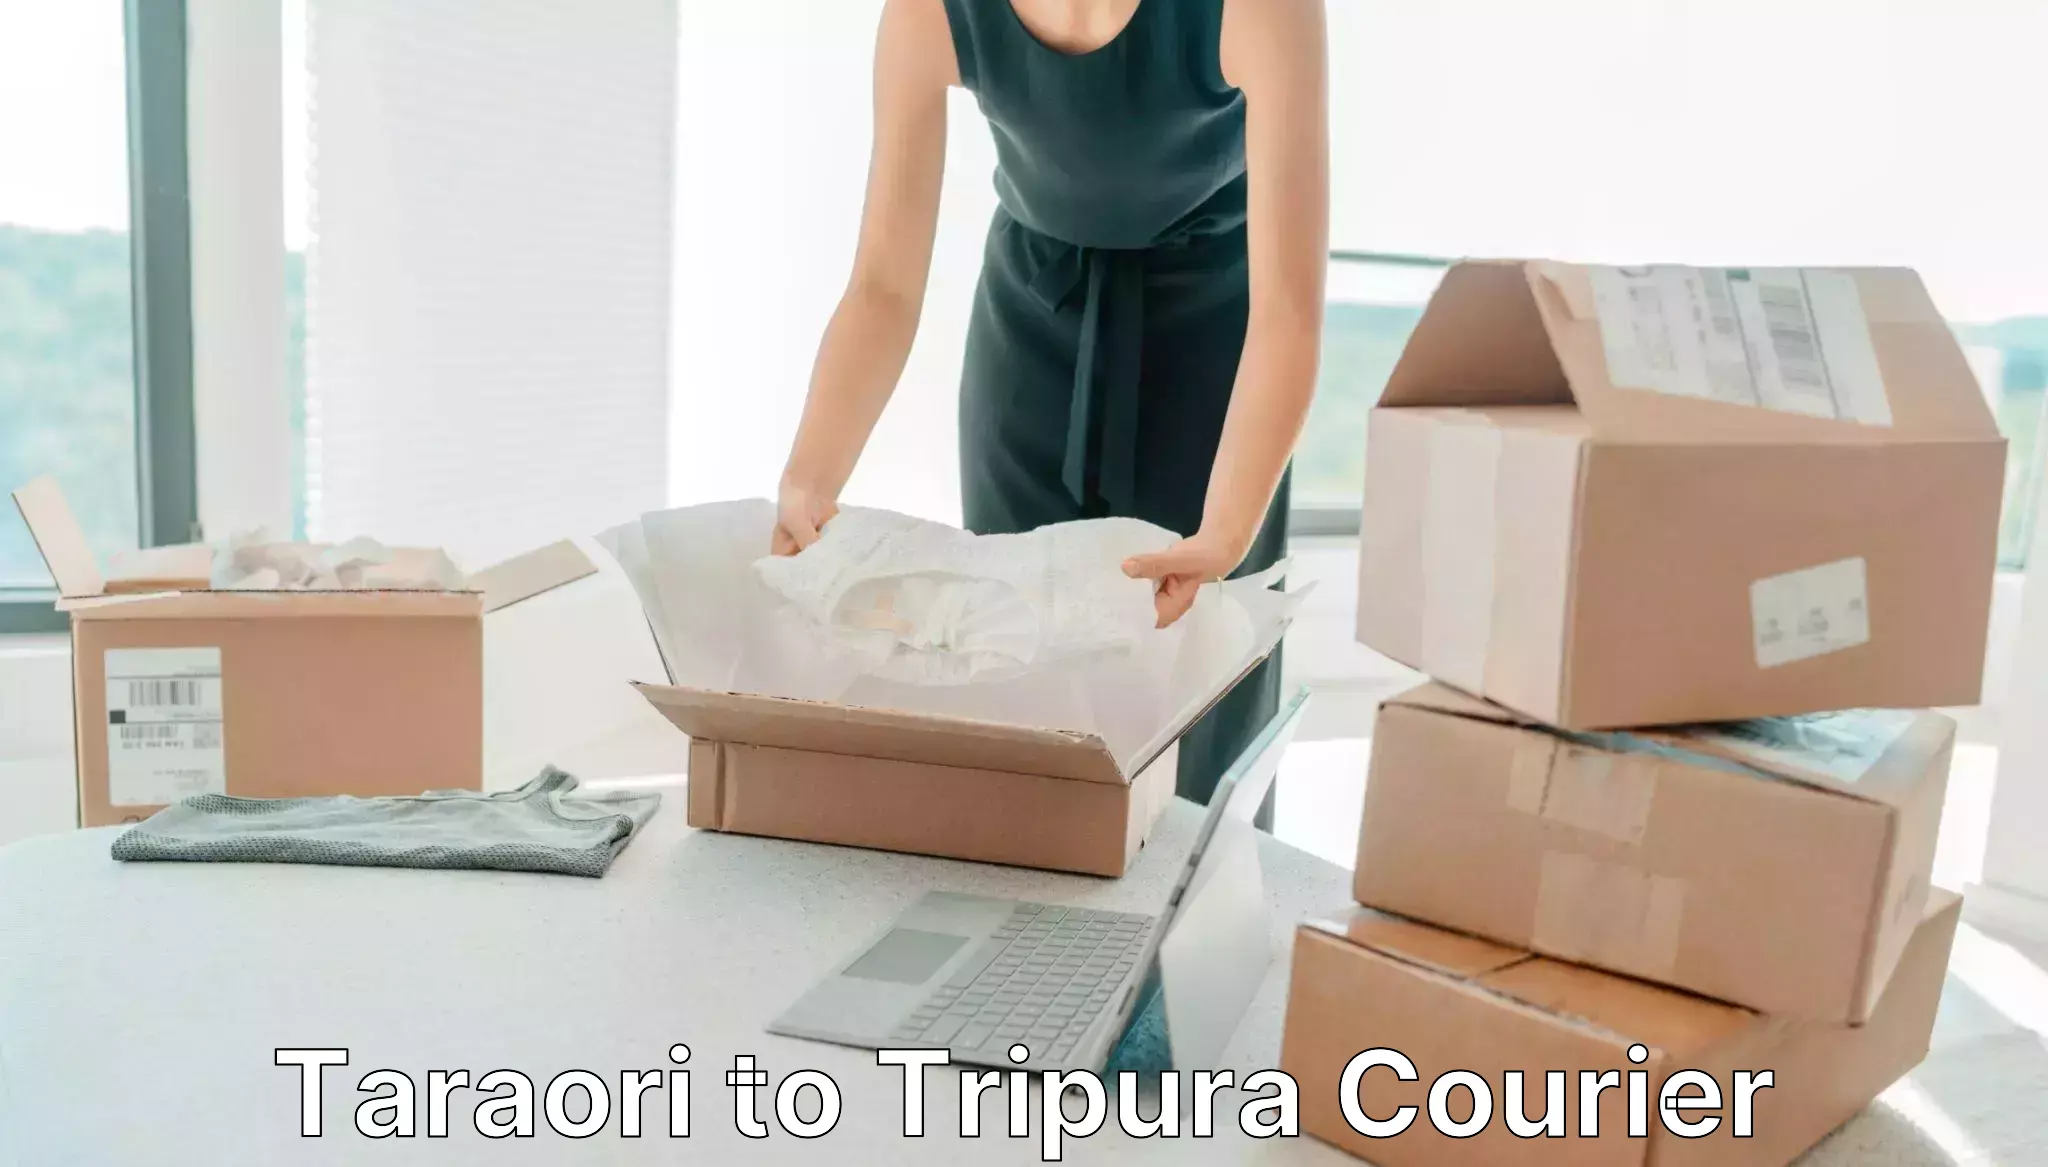 Next day courier Taraori to Udaipur Tripura